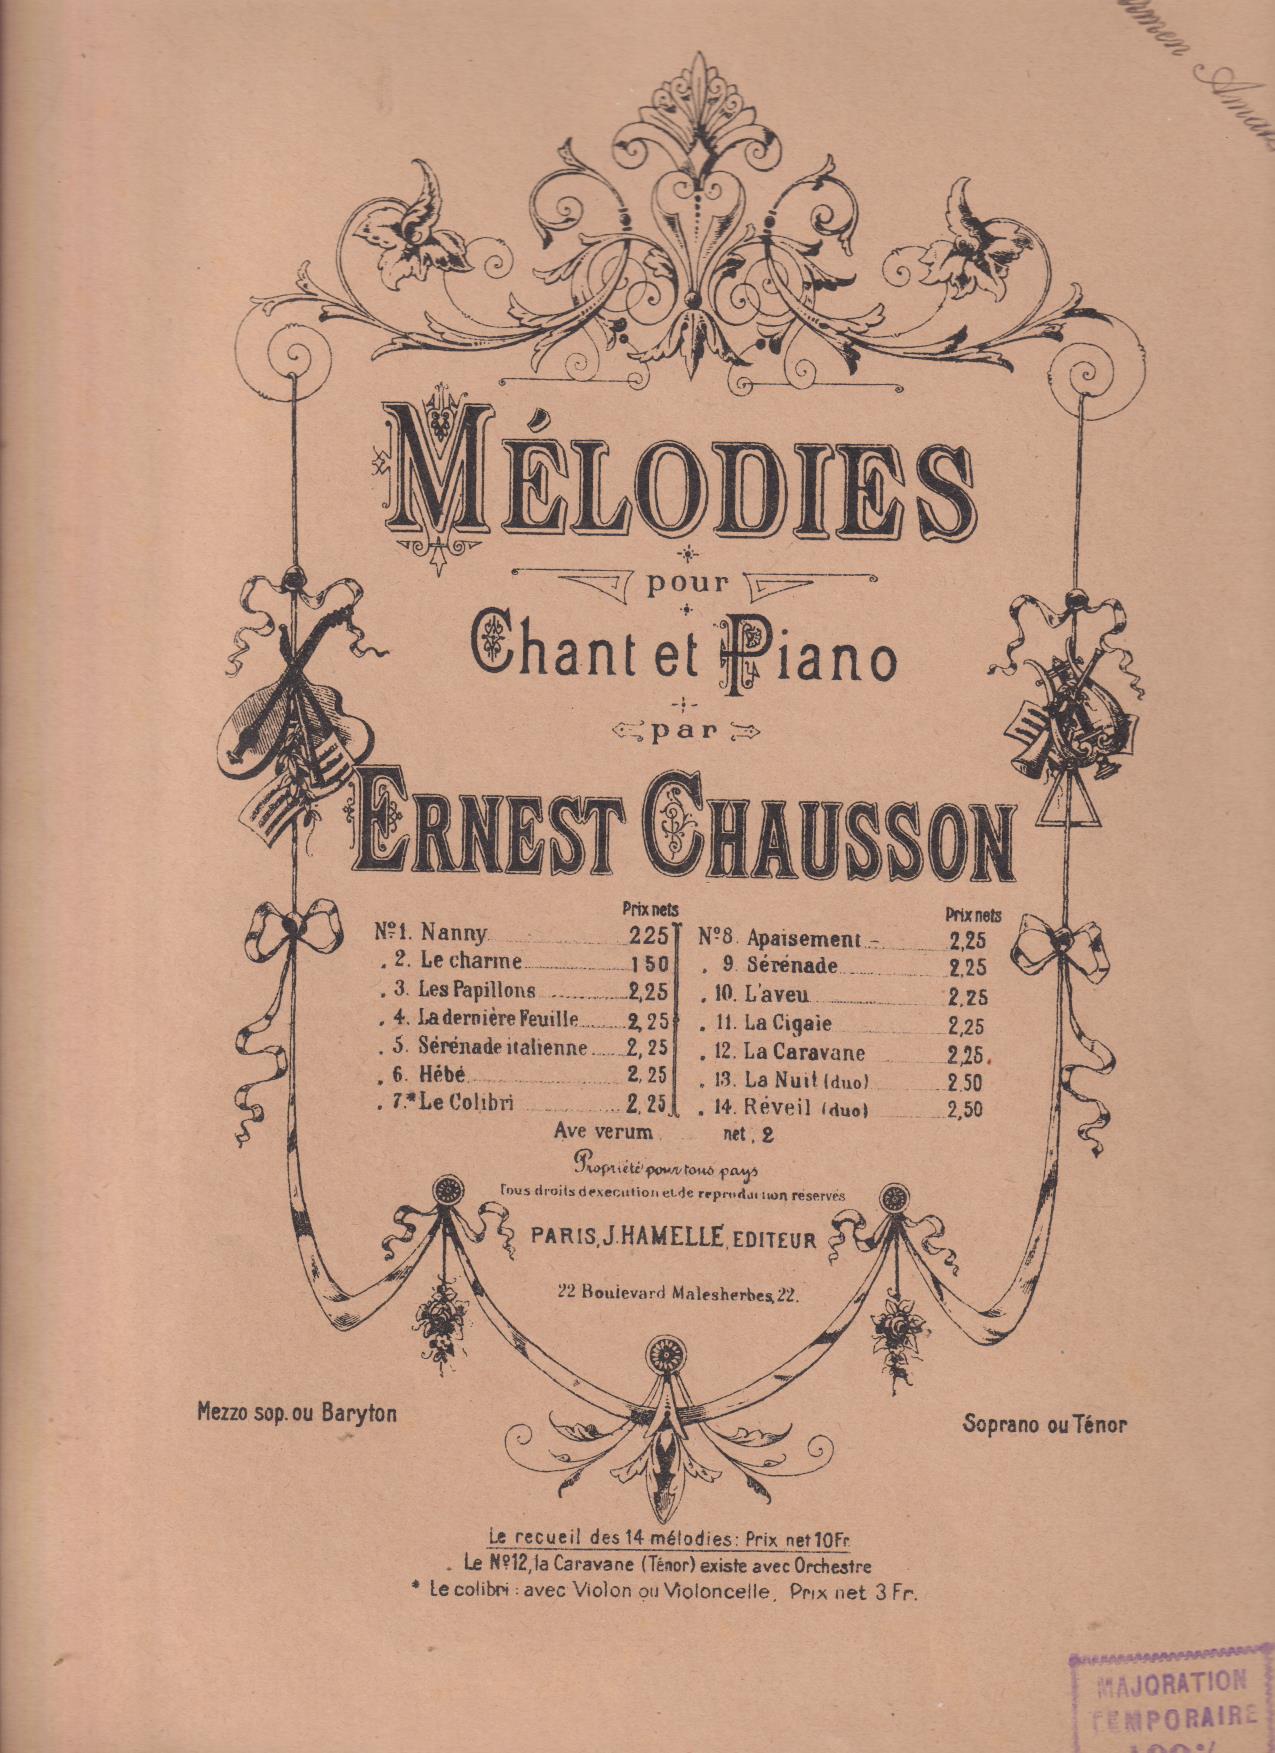 Mélodies pour Chant et Piano par Ernest Chausson (34x27) 40 páginas